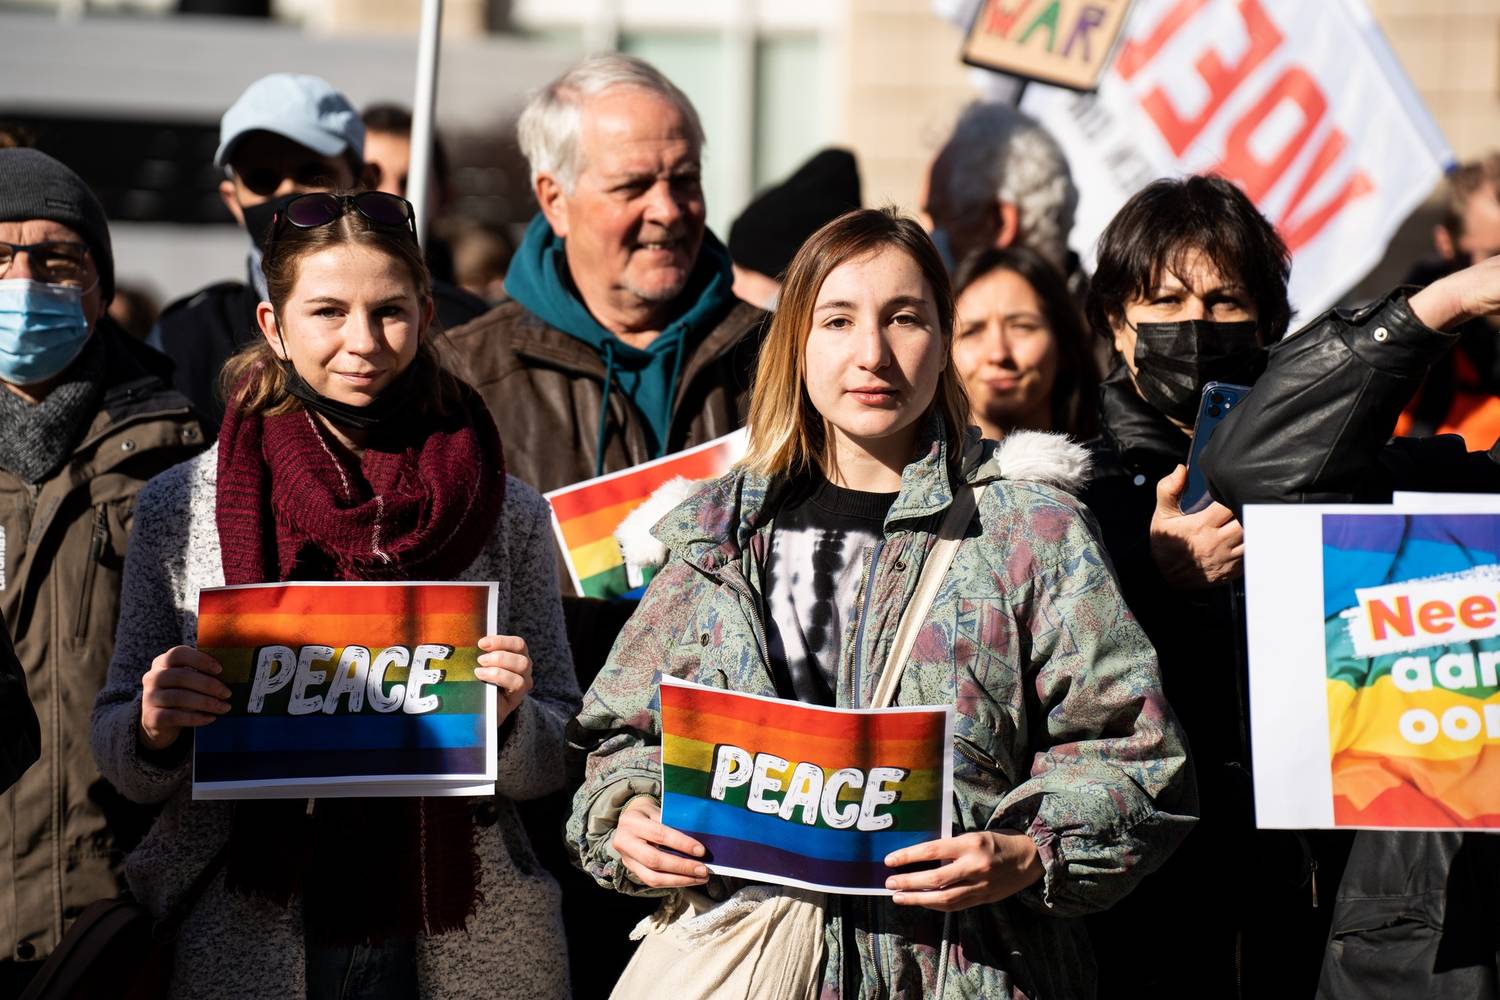 Vredebetogers met bordjes waar 'peace' op staat. Jonge vredesactivist